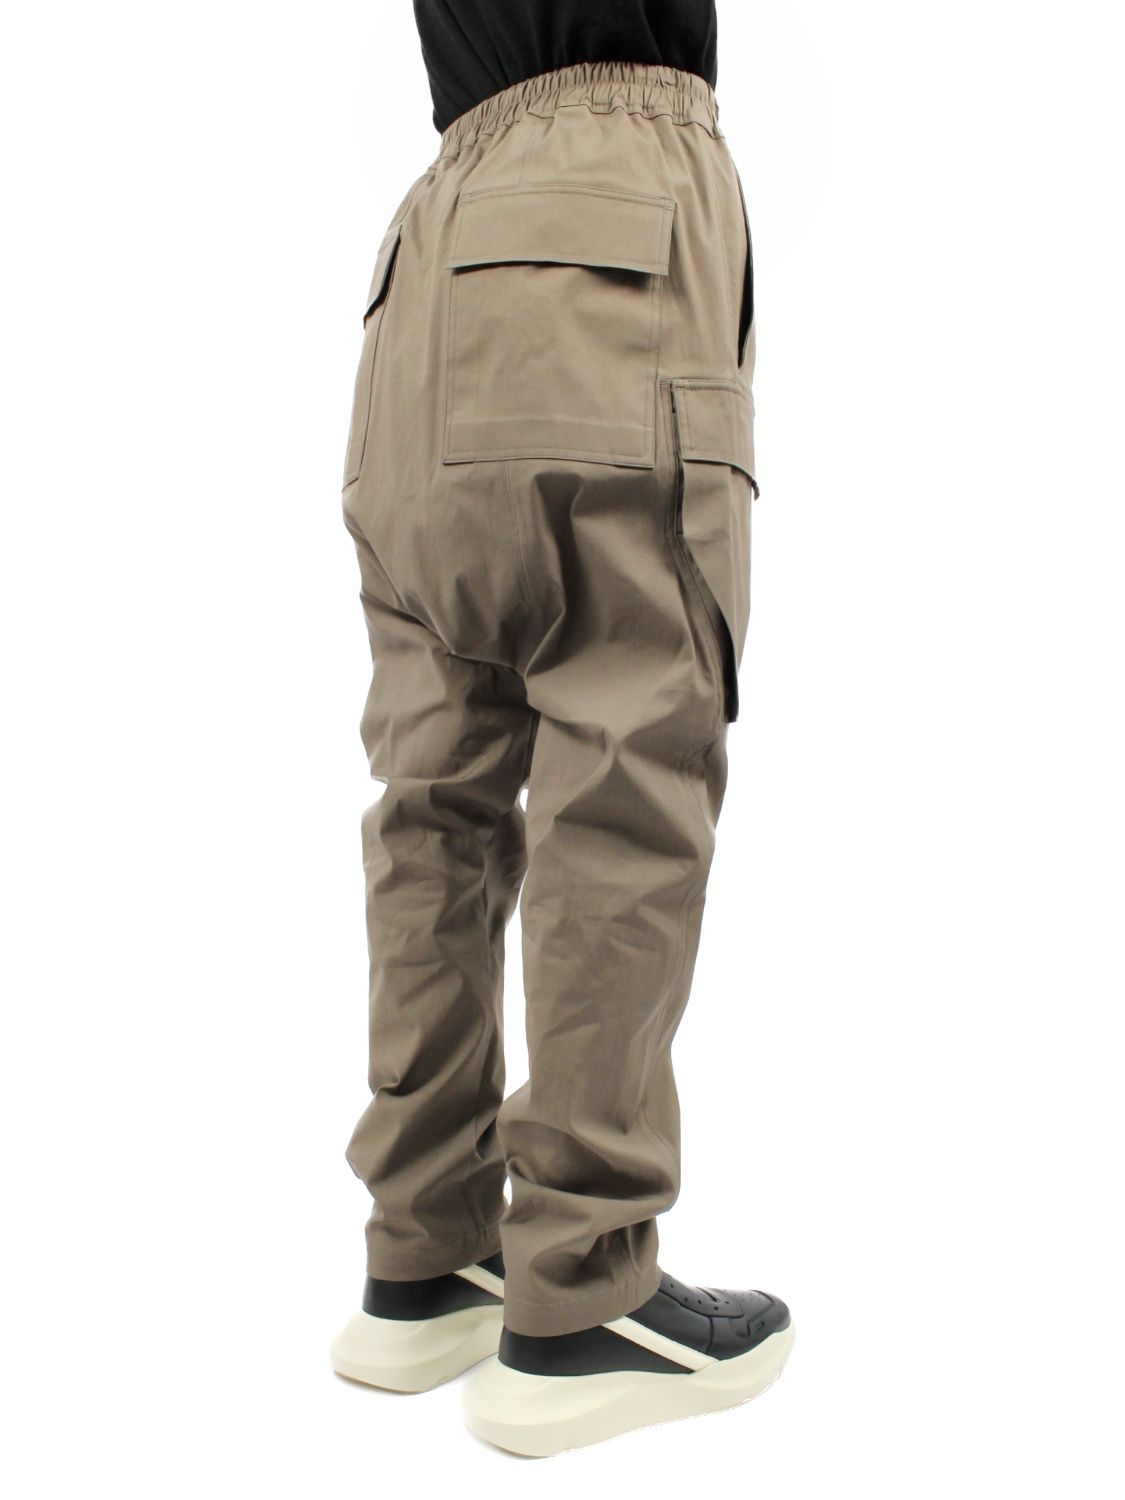 Rick Owens リックオウエンス 21AW Cargo Long Pants サルエル カーゴ ロングパンツ カーキ SM-S22-0000-072 Size 46